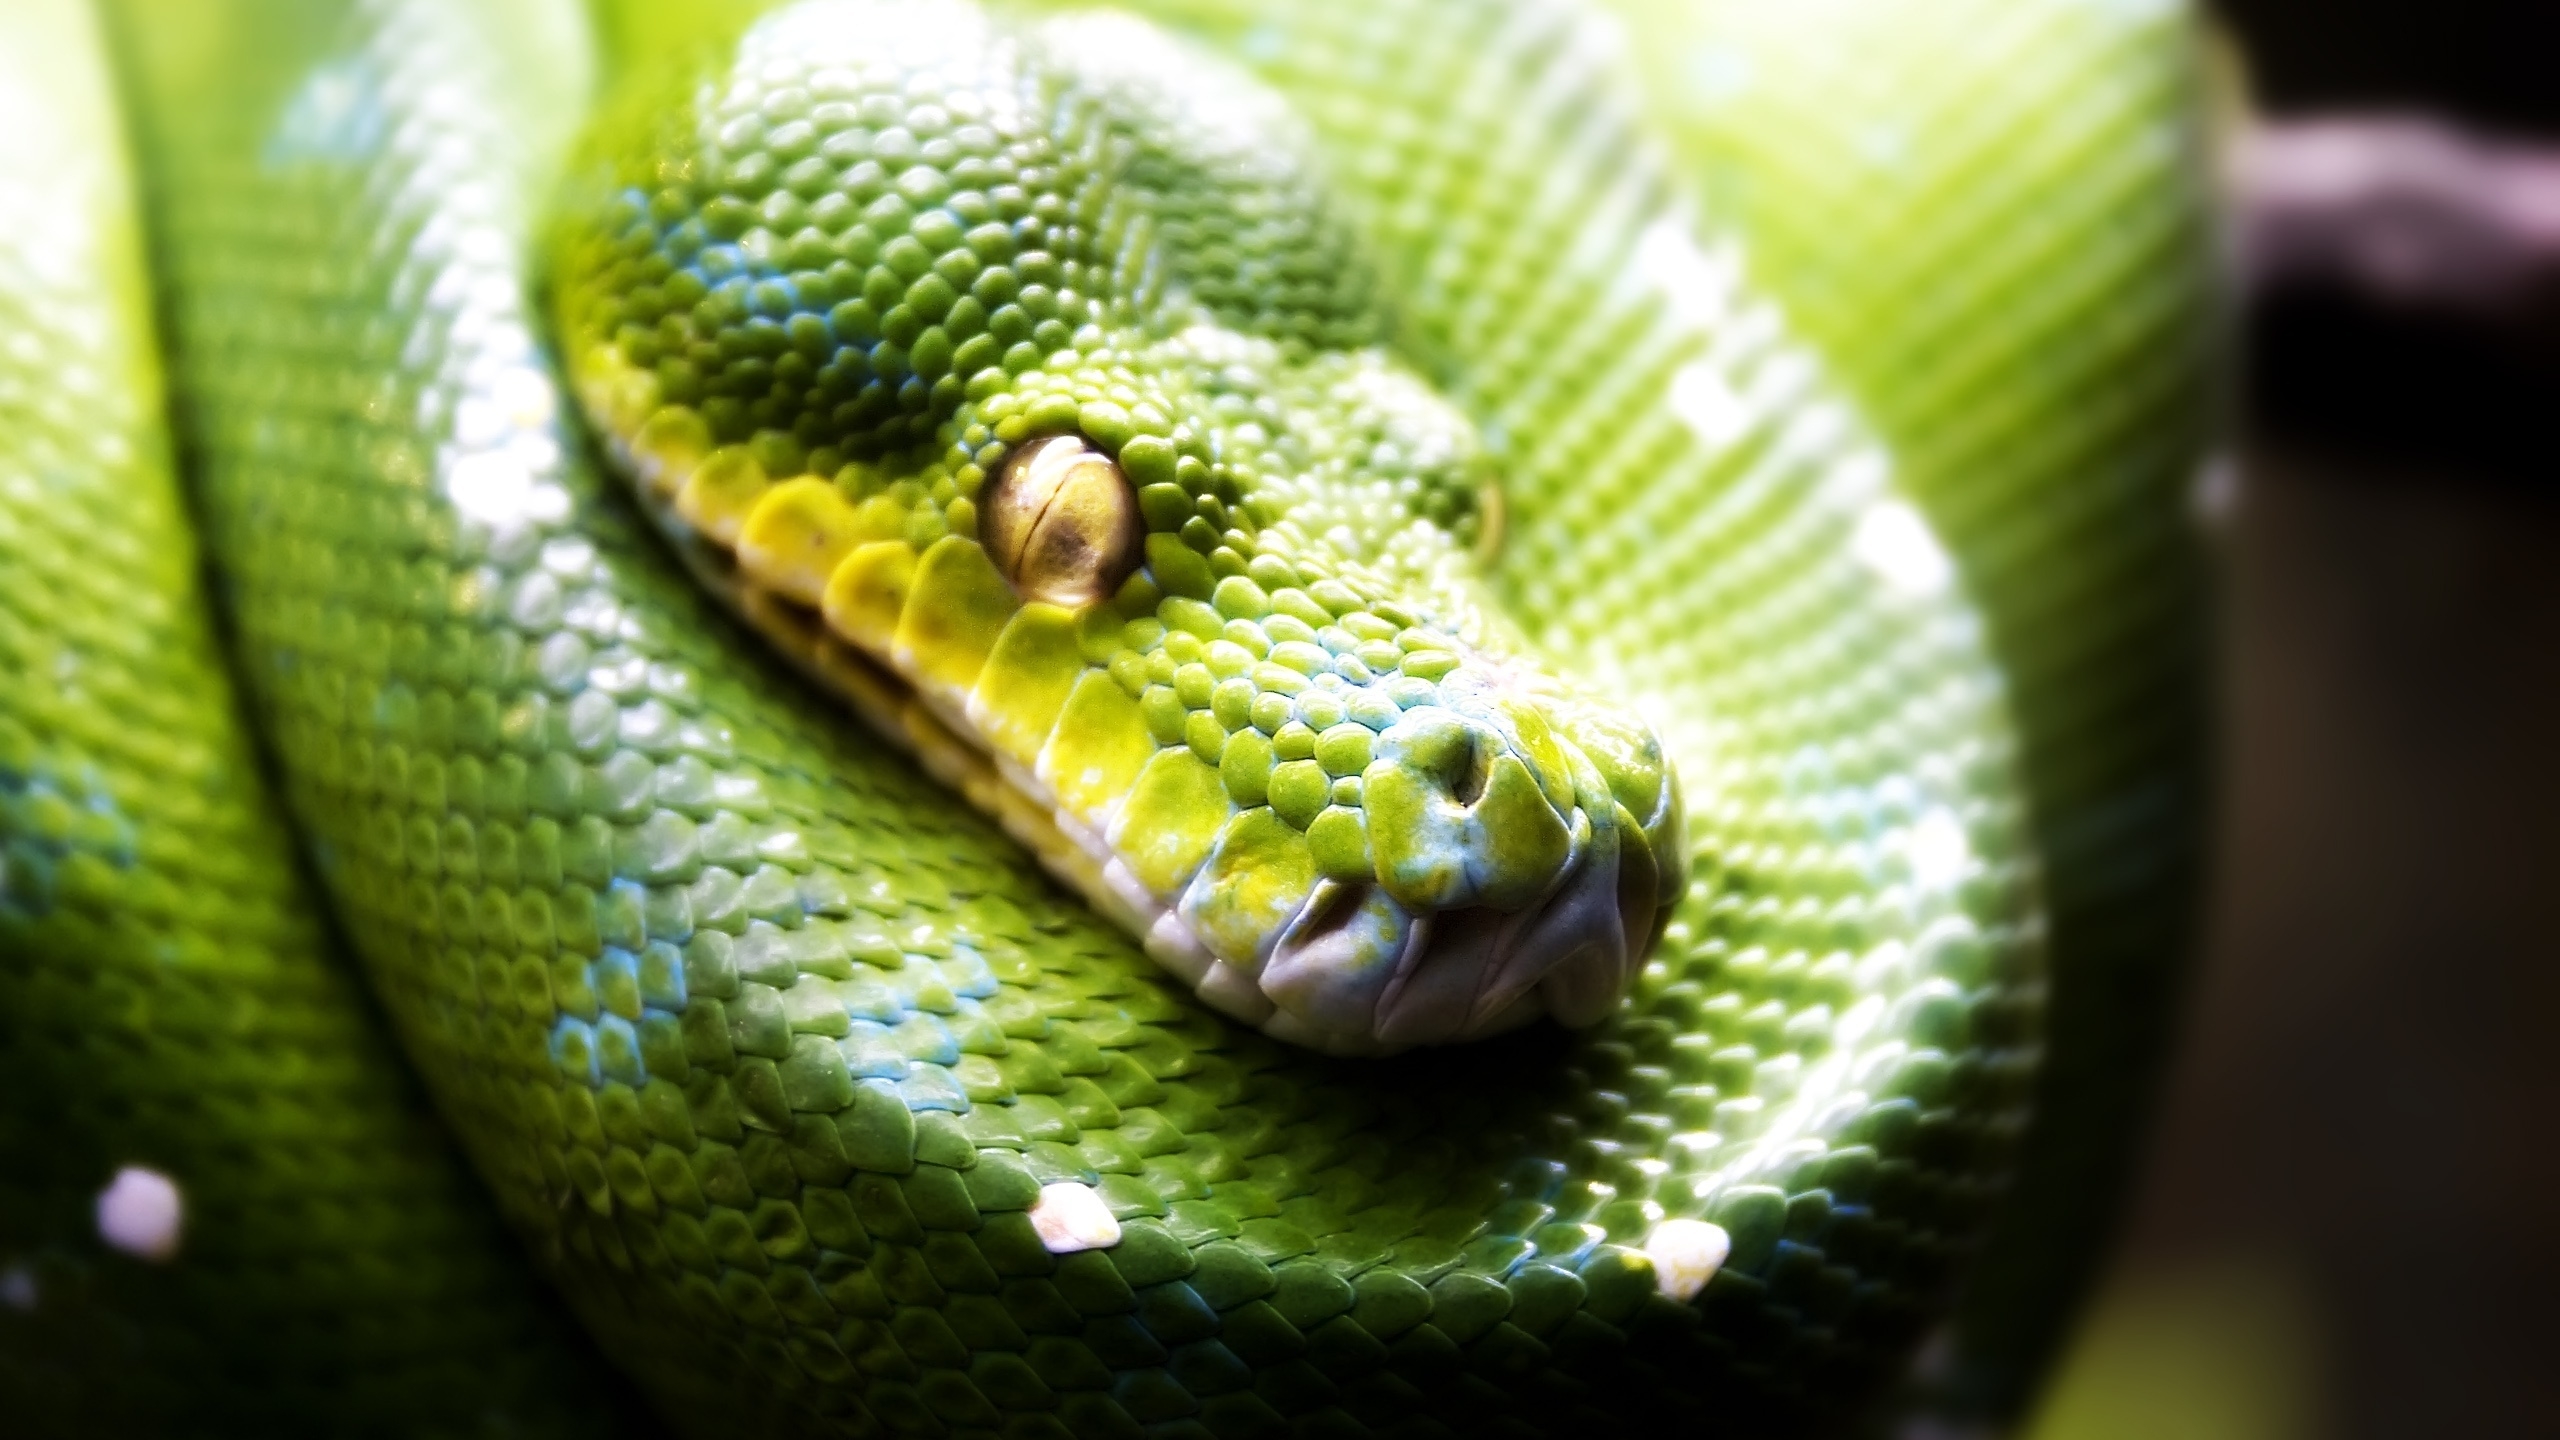 Green Snake for 2560x1440 HDTV resolution